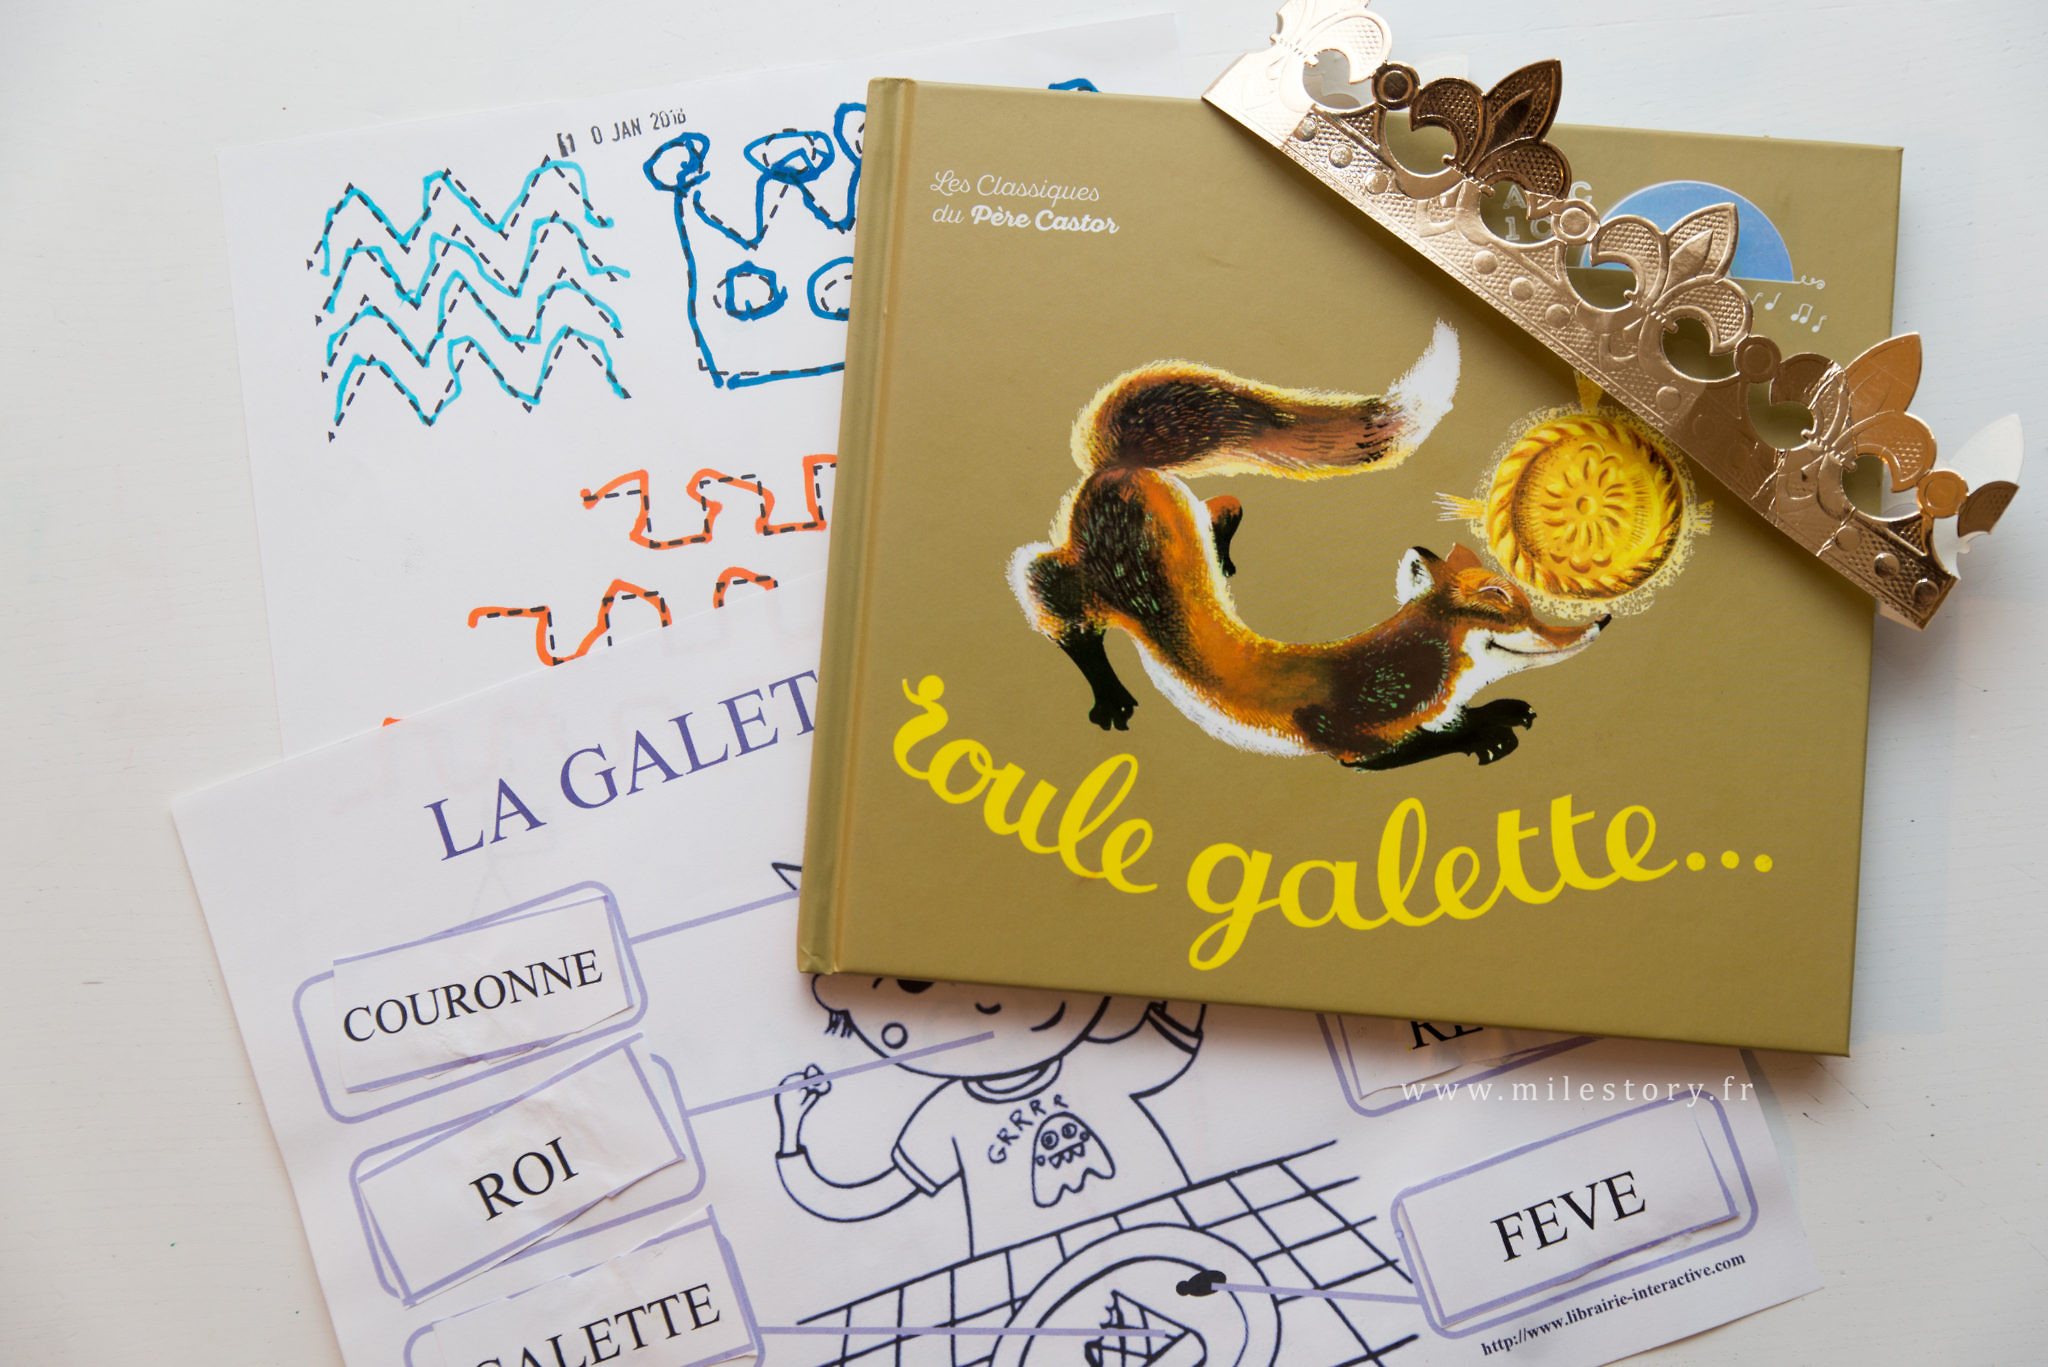 Comptine Roule galette - Le blog de Delphine